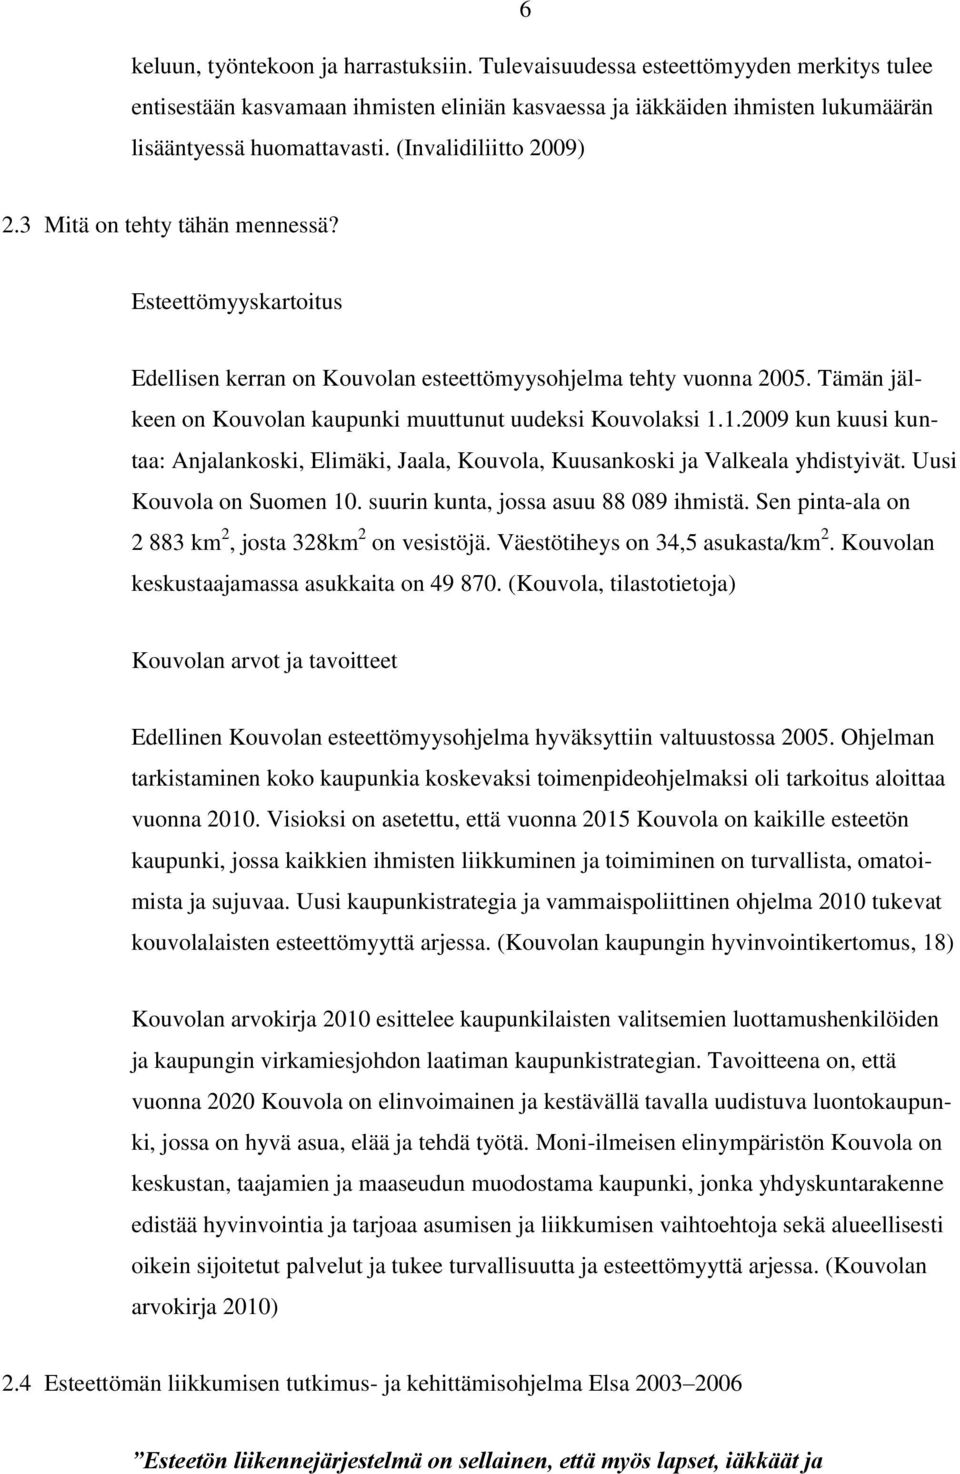 Tämän jälkeen on Kouvolan kaupunki muuttunut uudeksi Kouvolaksi 1.1.2009 kun kuusi kuntaa: Anjalankoski, Elimäki, Jaala, Kouvola, Kuusankoski ja Valkeala yhdistyivät. Uusi Kouvola on Suomen 10.